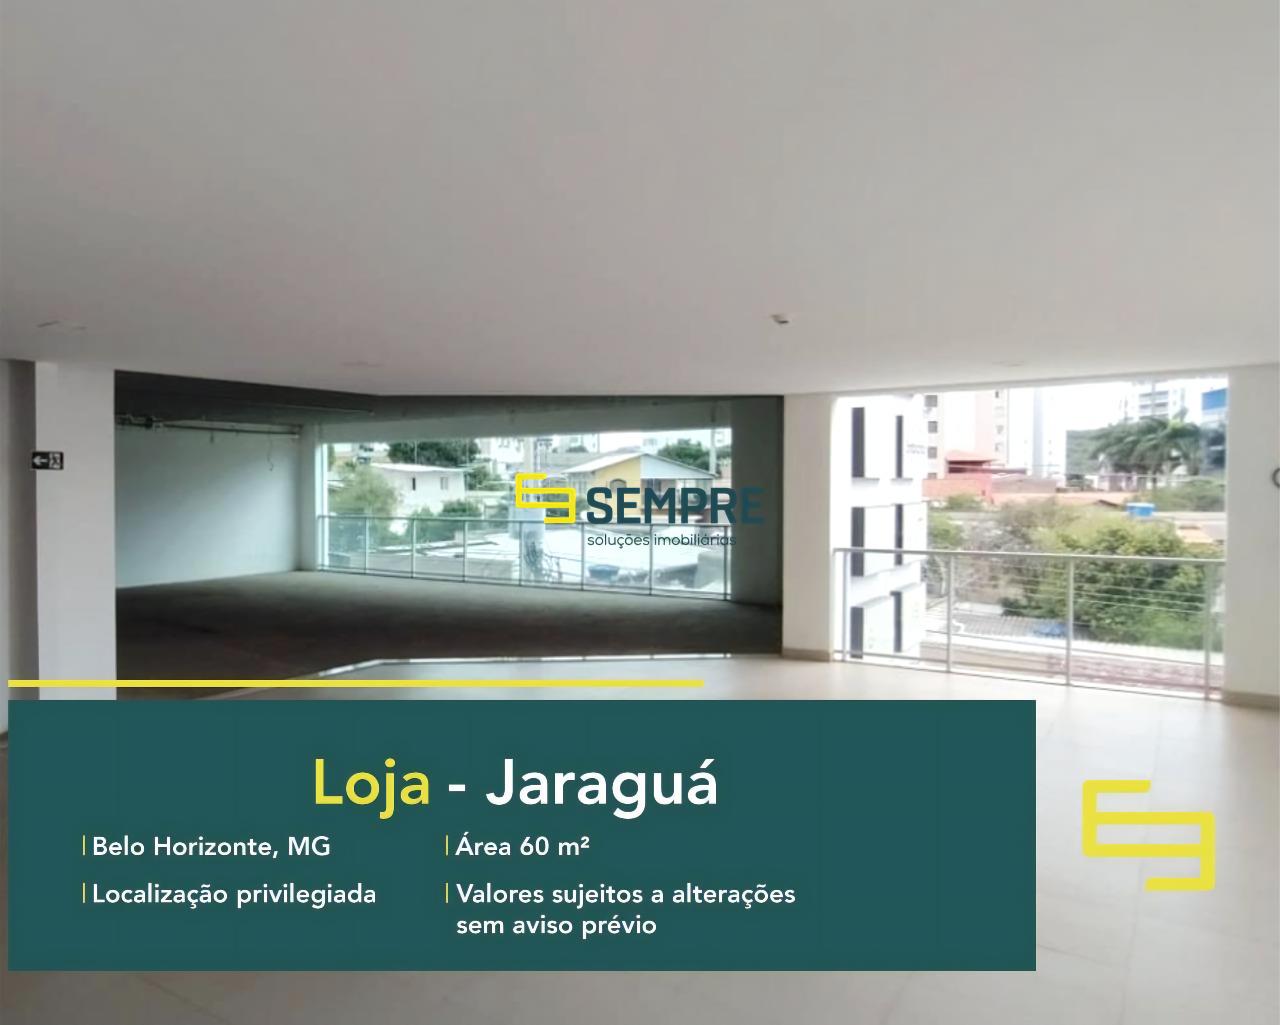 Locação de loja no Jaraguá em Belo Horizonte, excelente localização. O estabelecimento comercial conta, sobretudo, com área de 60,9 m².